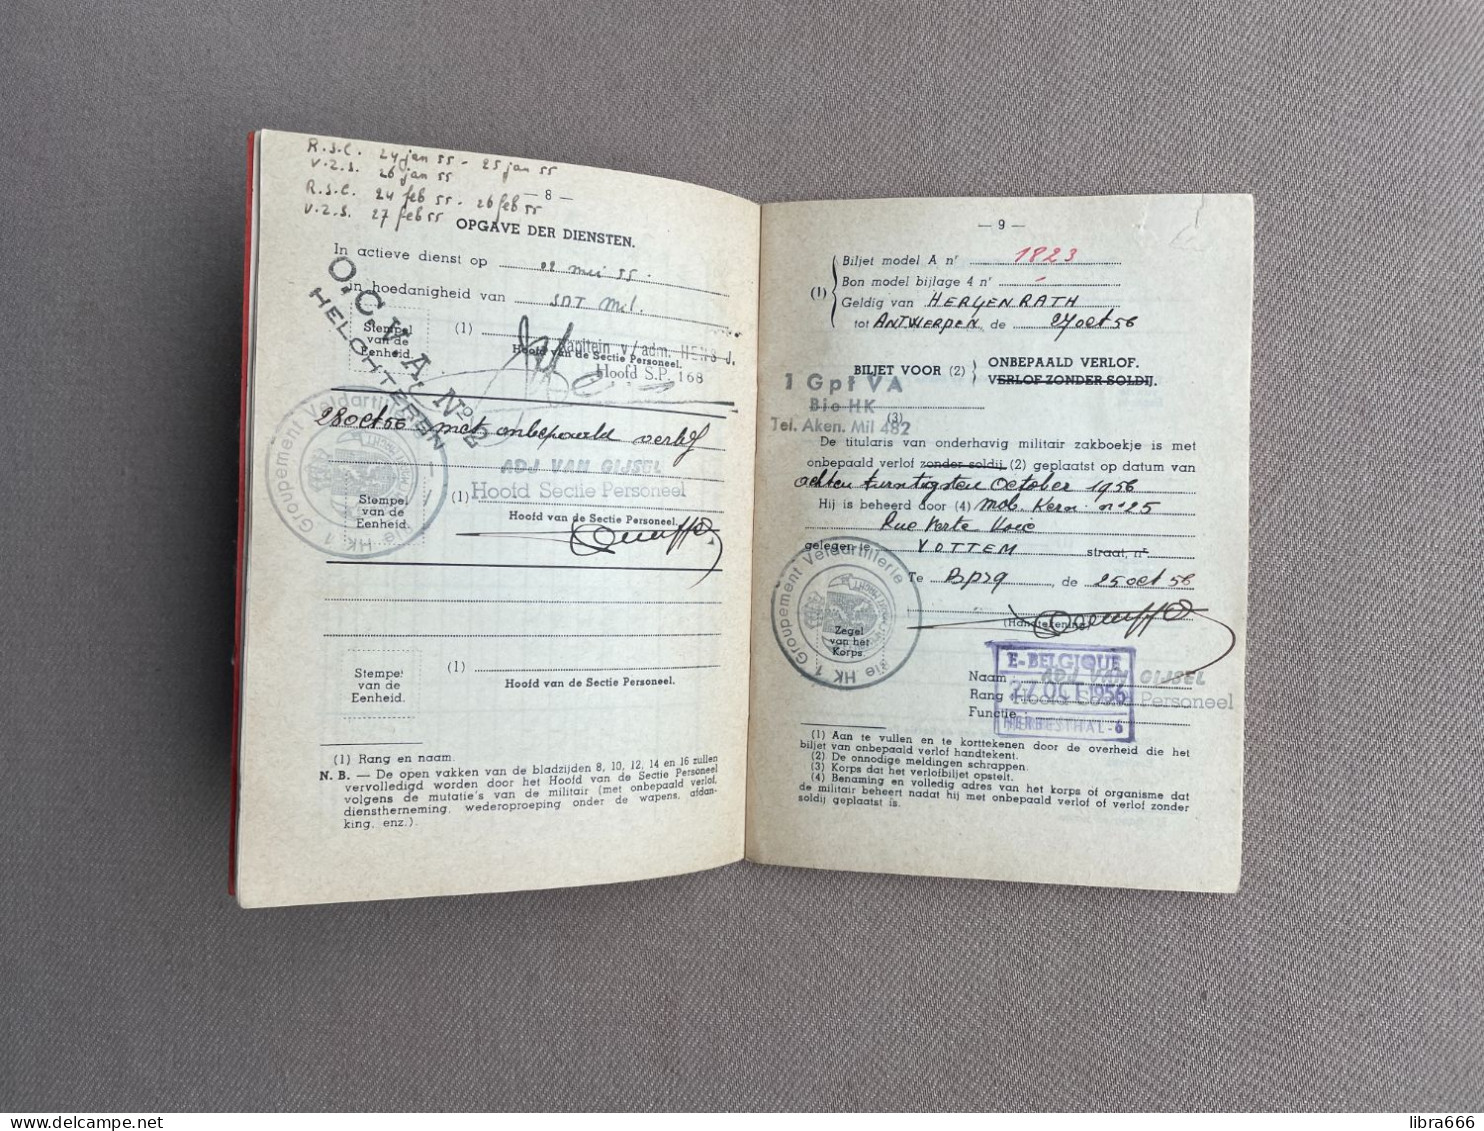 Belgisch Leger - MILITAIR ZAKBOEKJE 1956 - GANSES Olaf Jan Baptist - Antwerpen - BPS 9 BSD 1 GPT VA BIE HK Aken - Documents